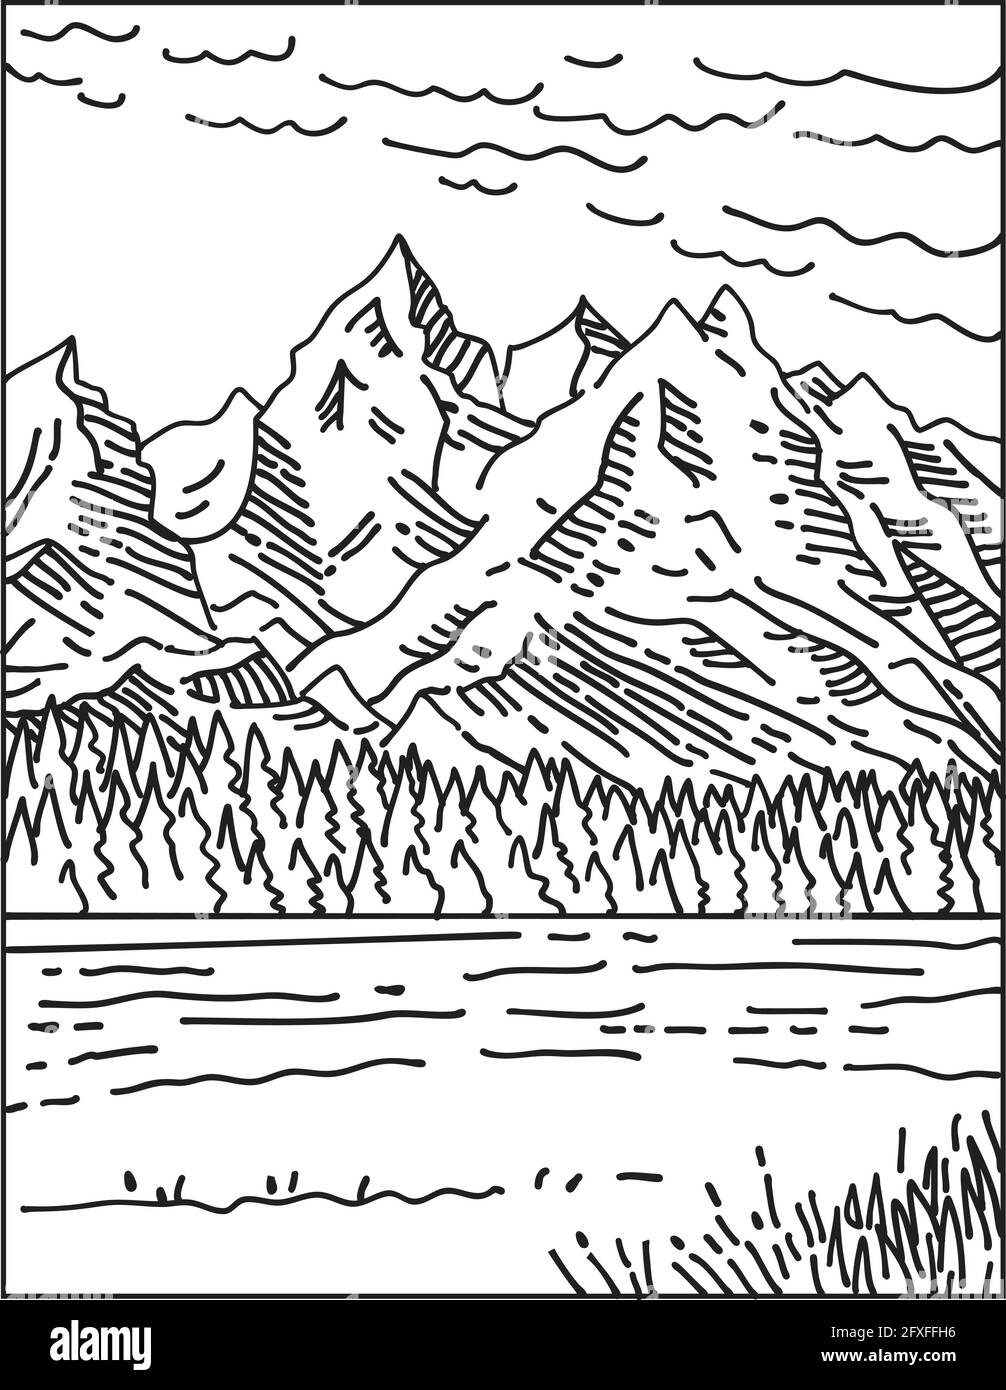 Illustration monoligne de la chaîne de Teton dans le parc national de Grand Teton situé dans le nord-ouest du Wyoming, États-Unis fait en Mo rétro noir et blanc Illustration de Vecteur